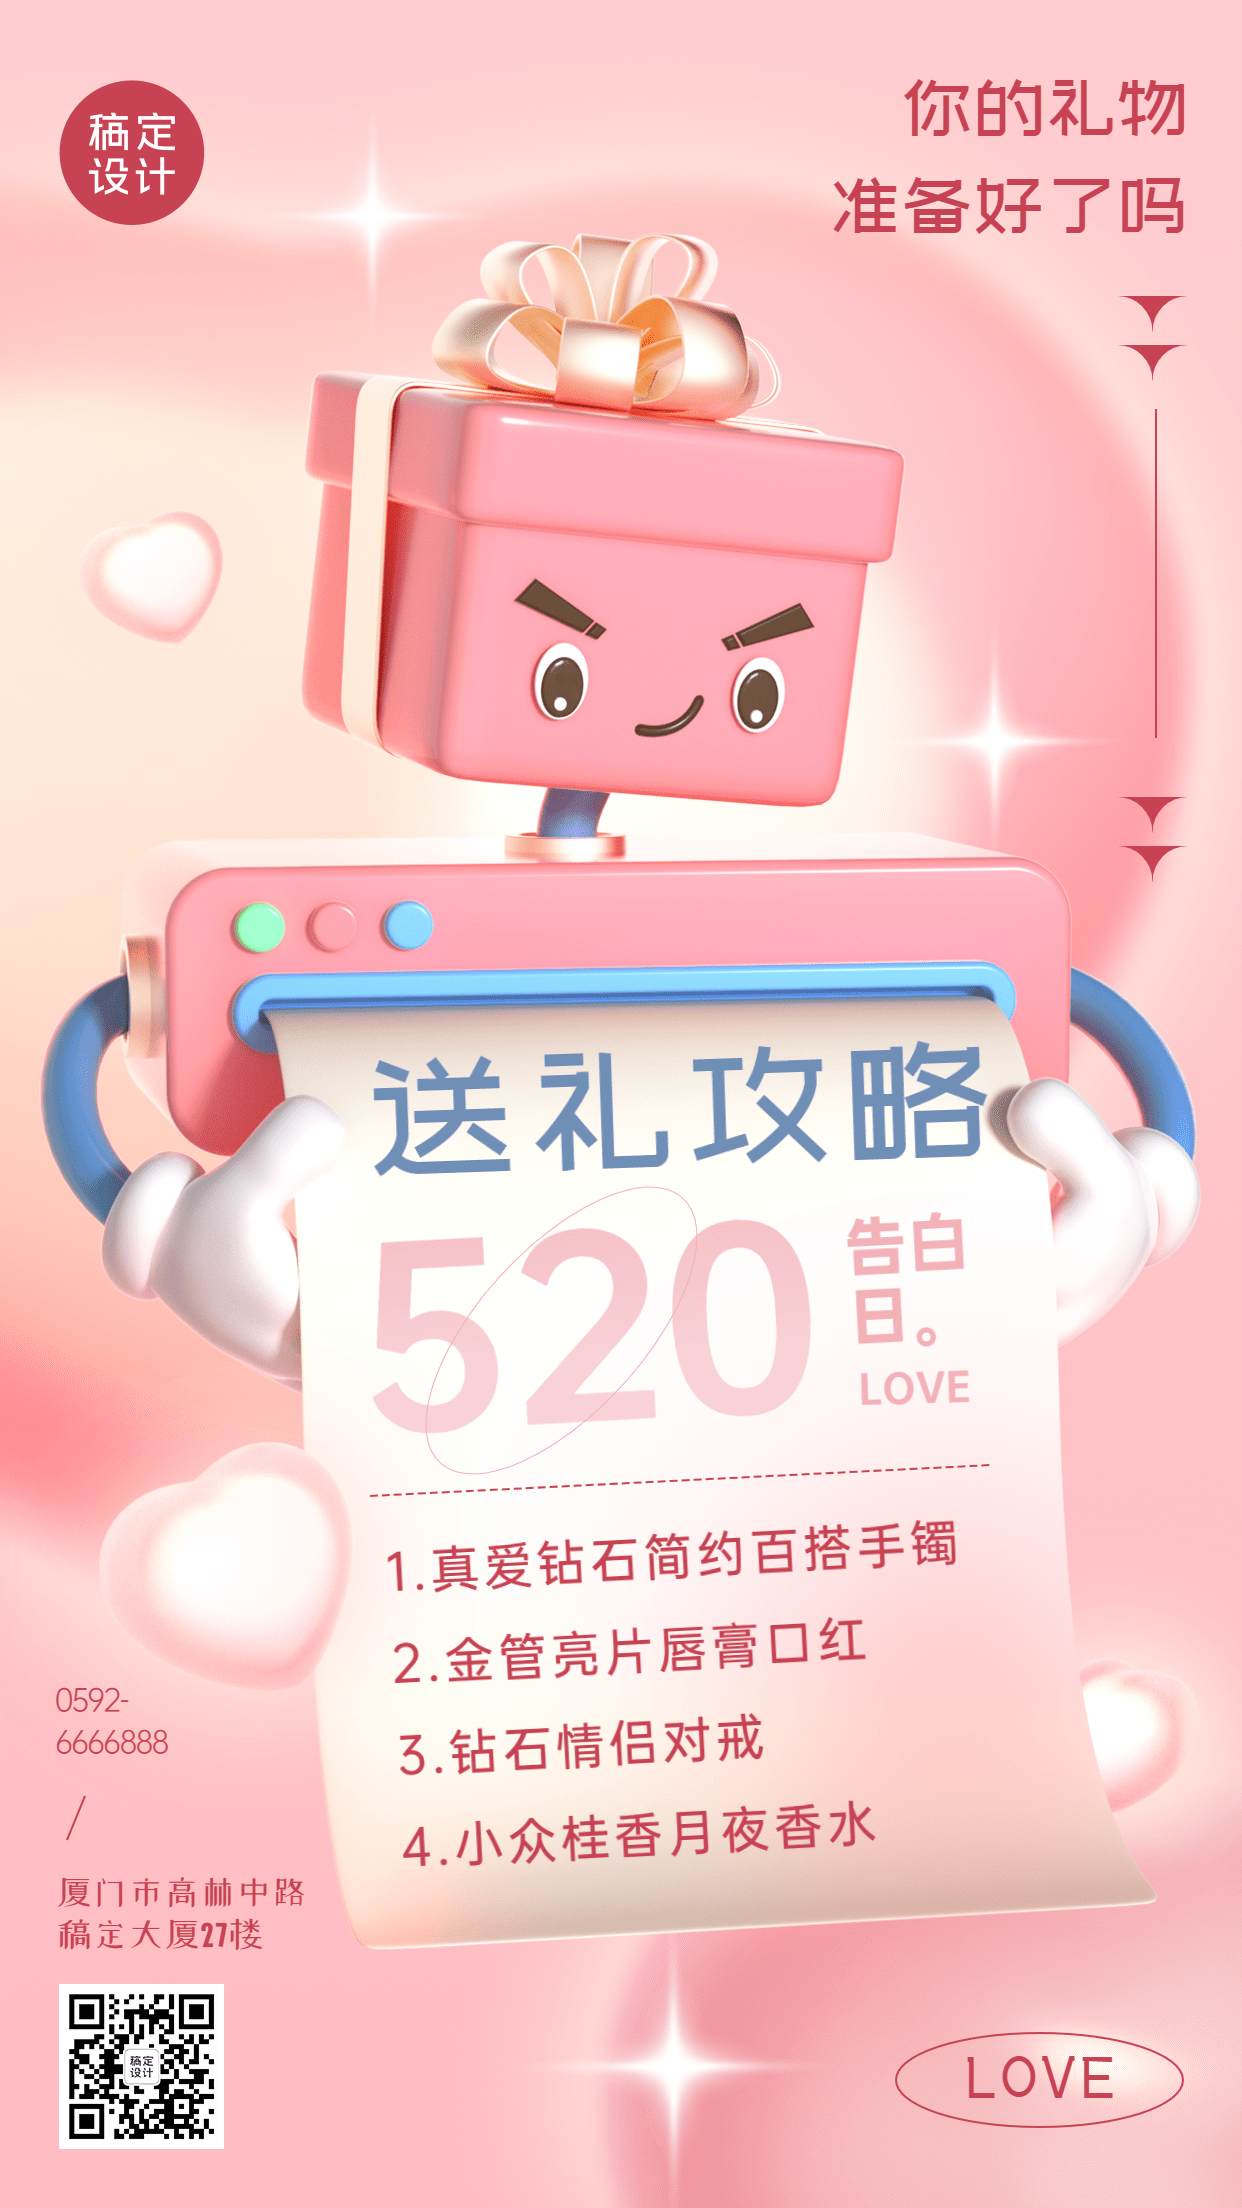 520情人节产品促销礼物清单3D手机海报预览效果